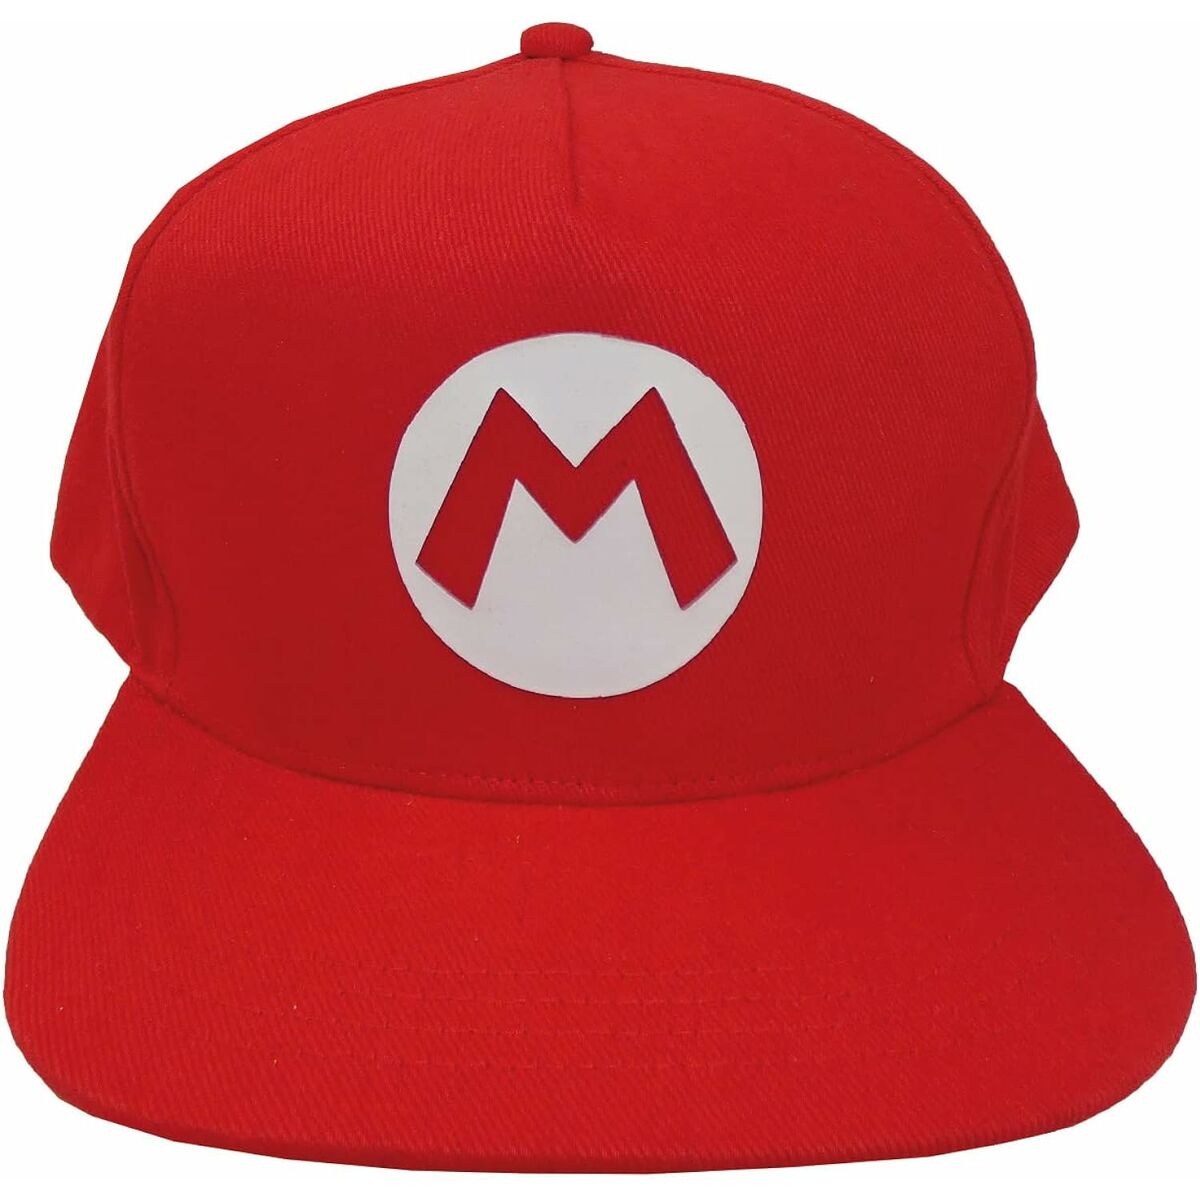 Unisex hat Super Mario Badge 58 cm Red One size